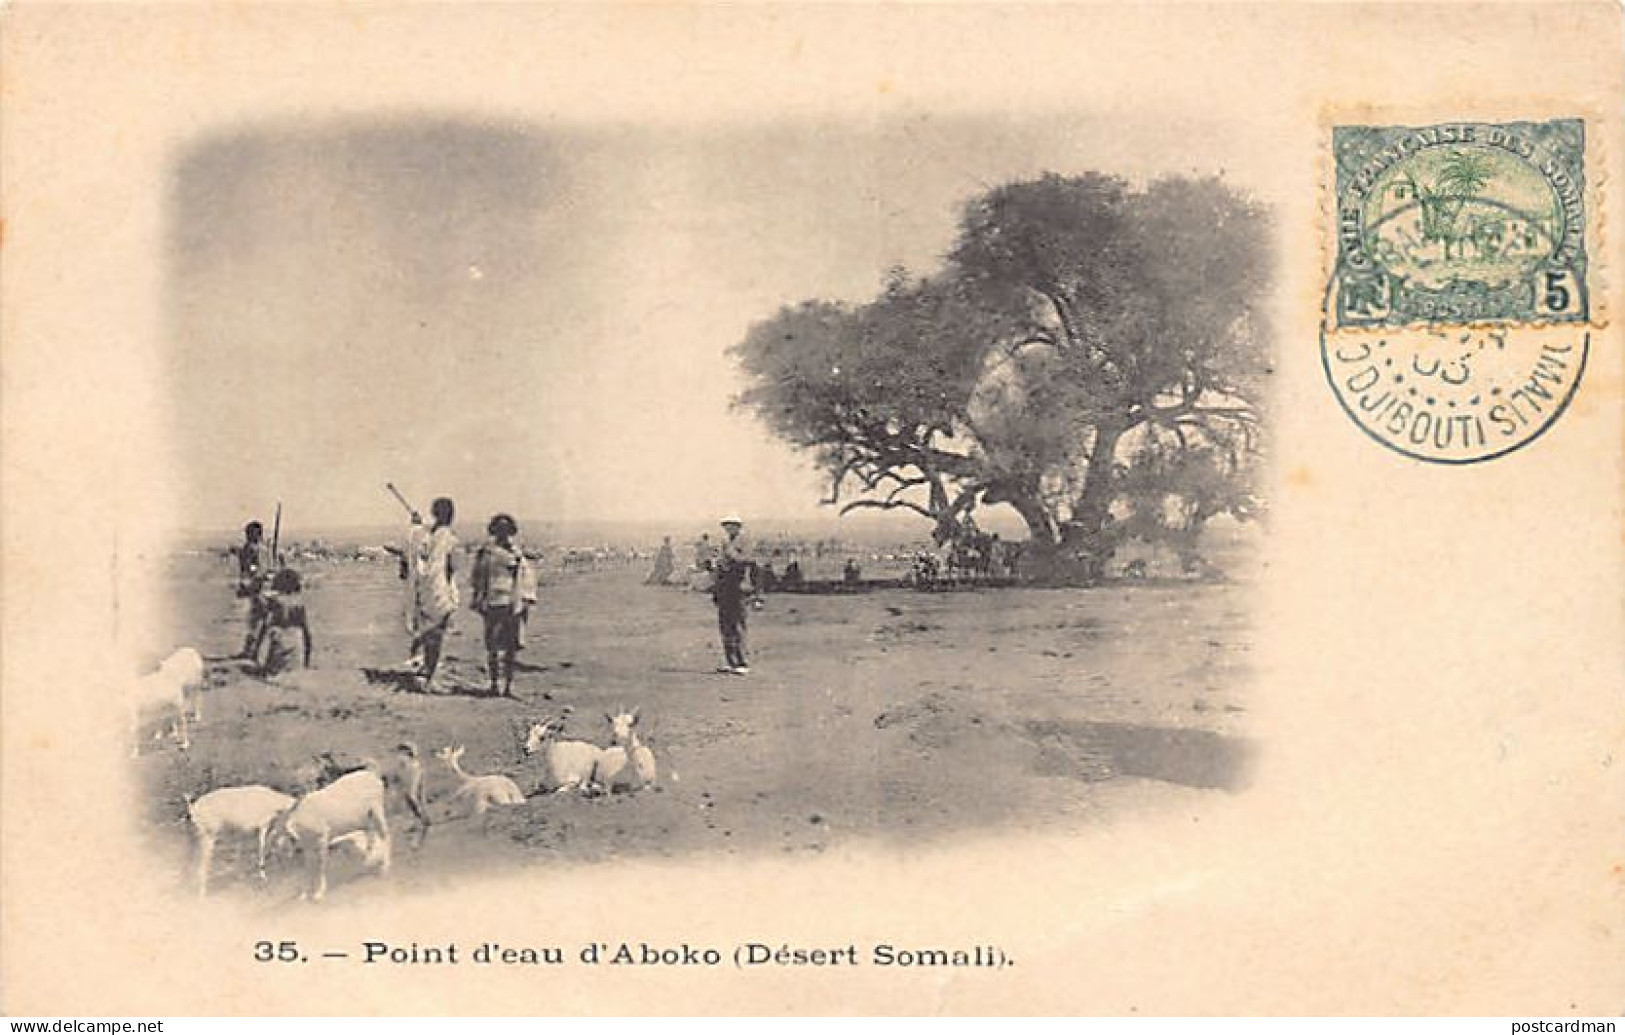 Ethiopia - ABUKO (spelled Aboko) - Water Point - Ethiopie